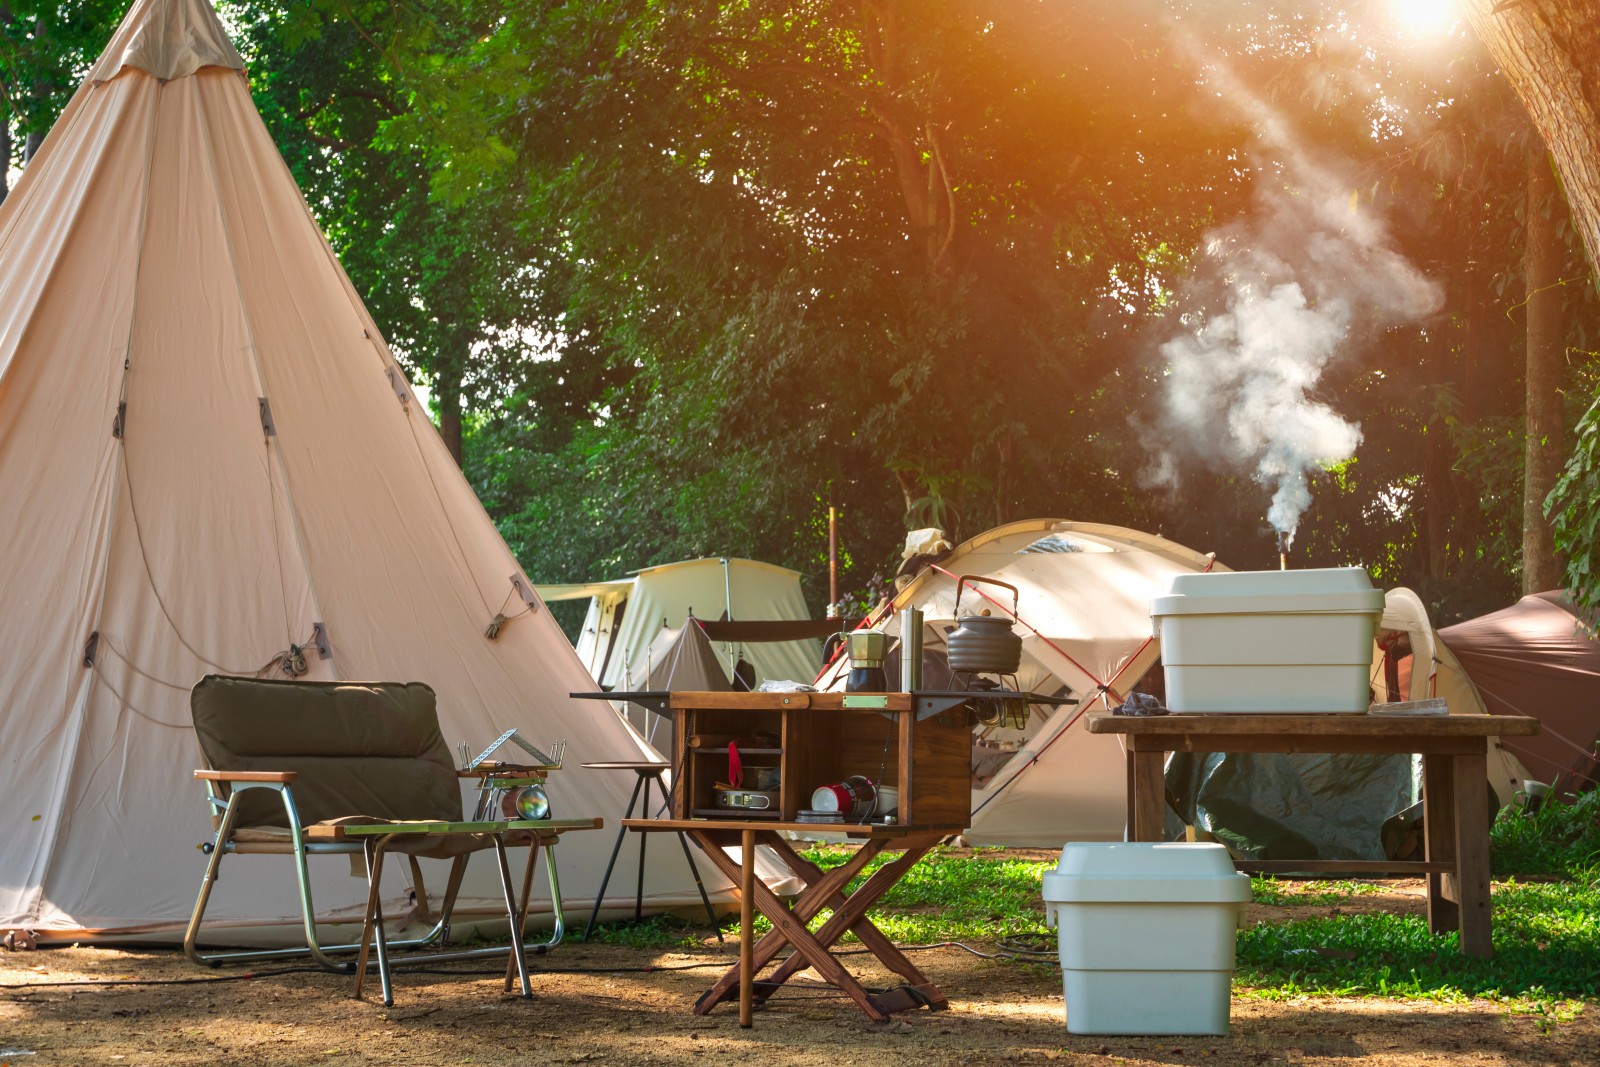 Glamourous Camping - Woher kommt der Urlaubs-Trend heute?